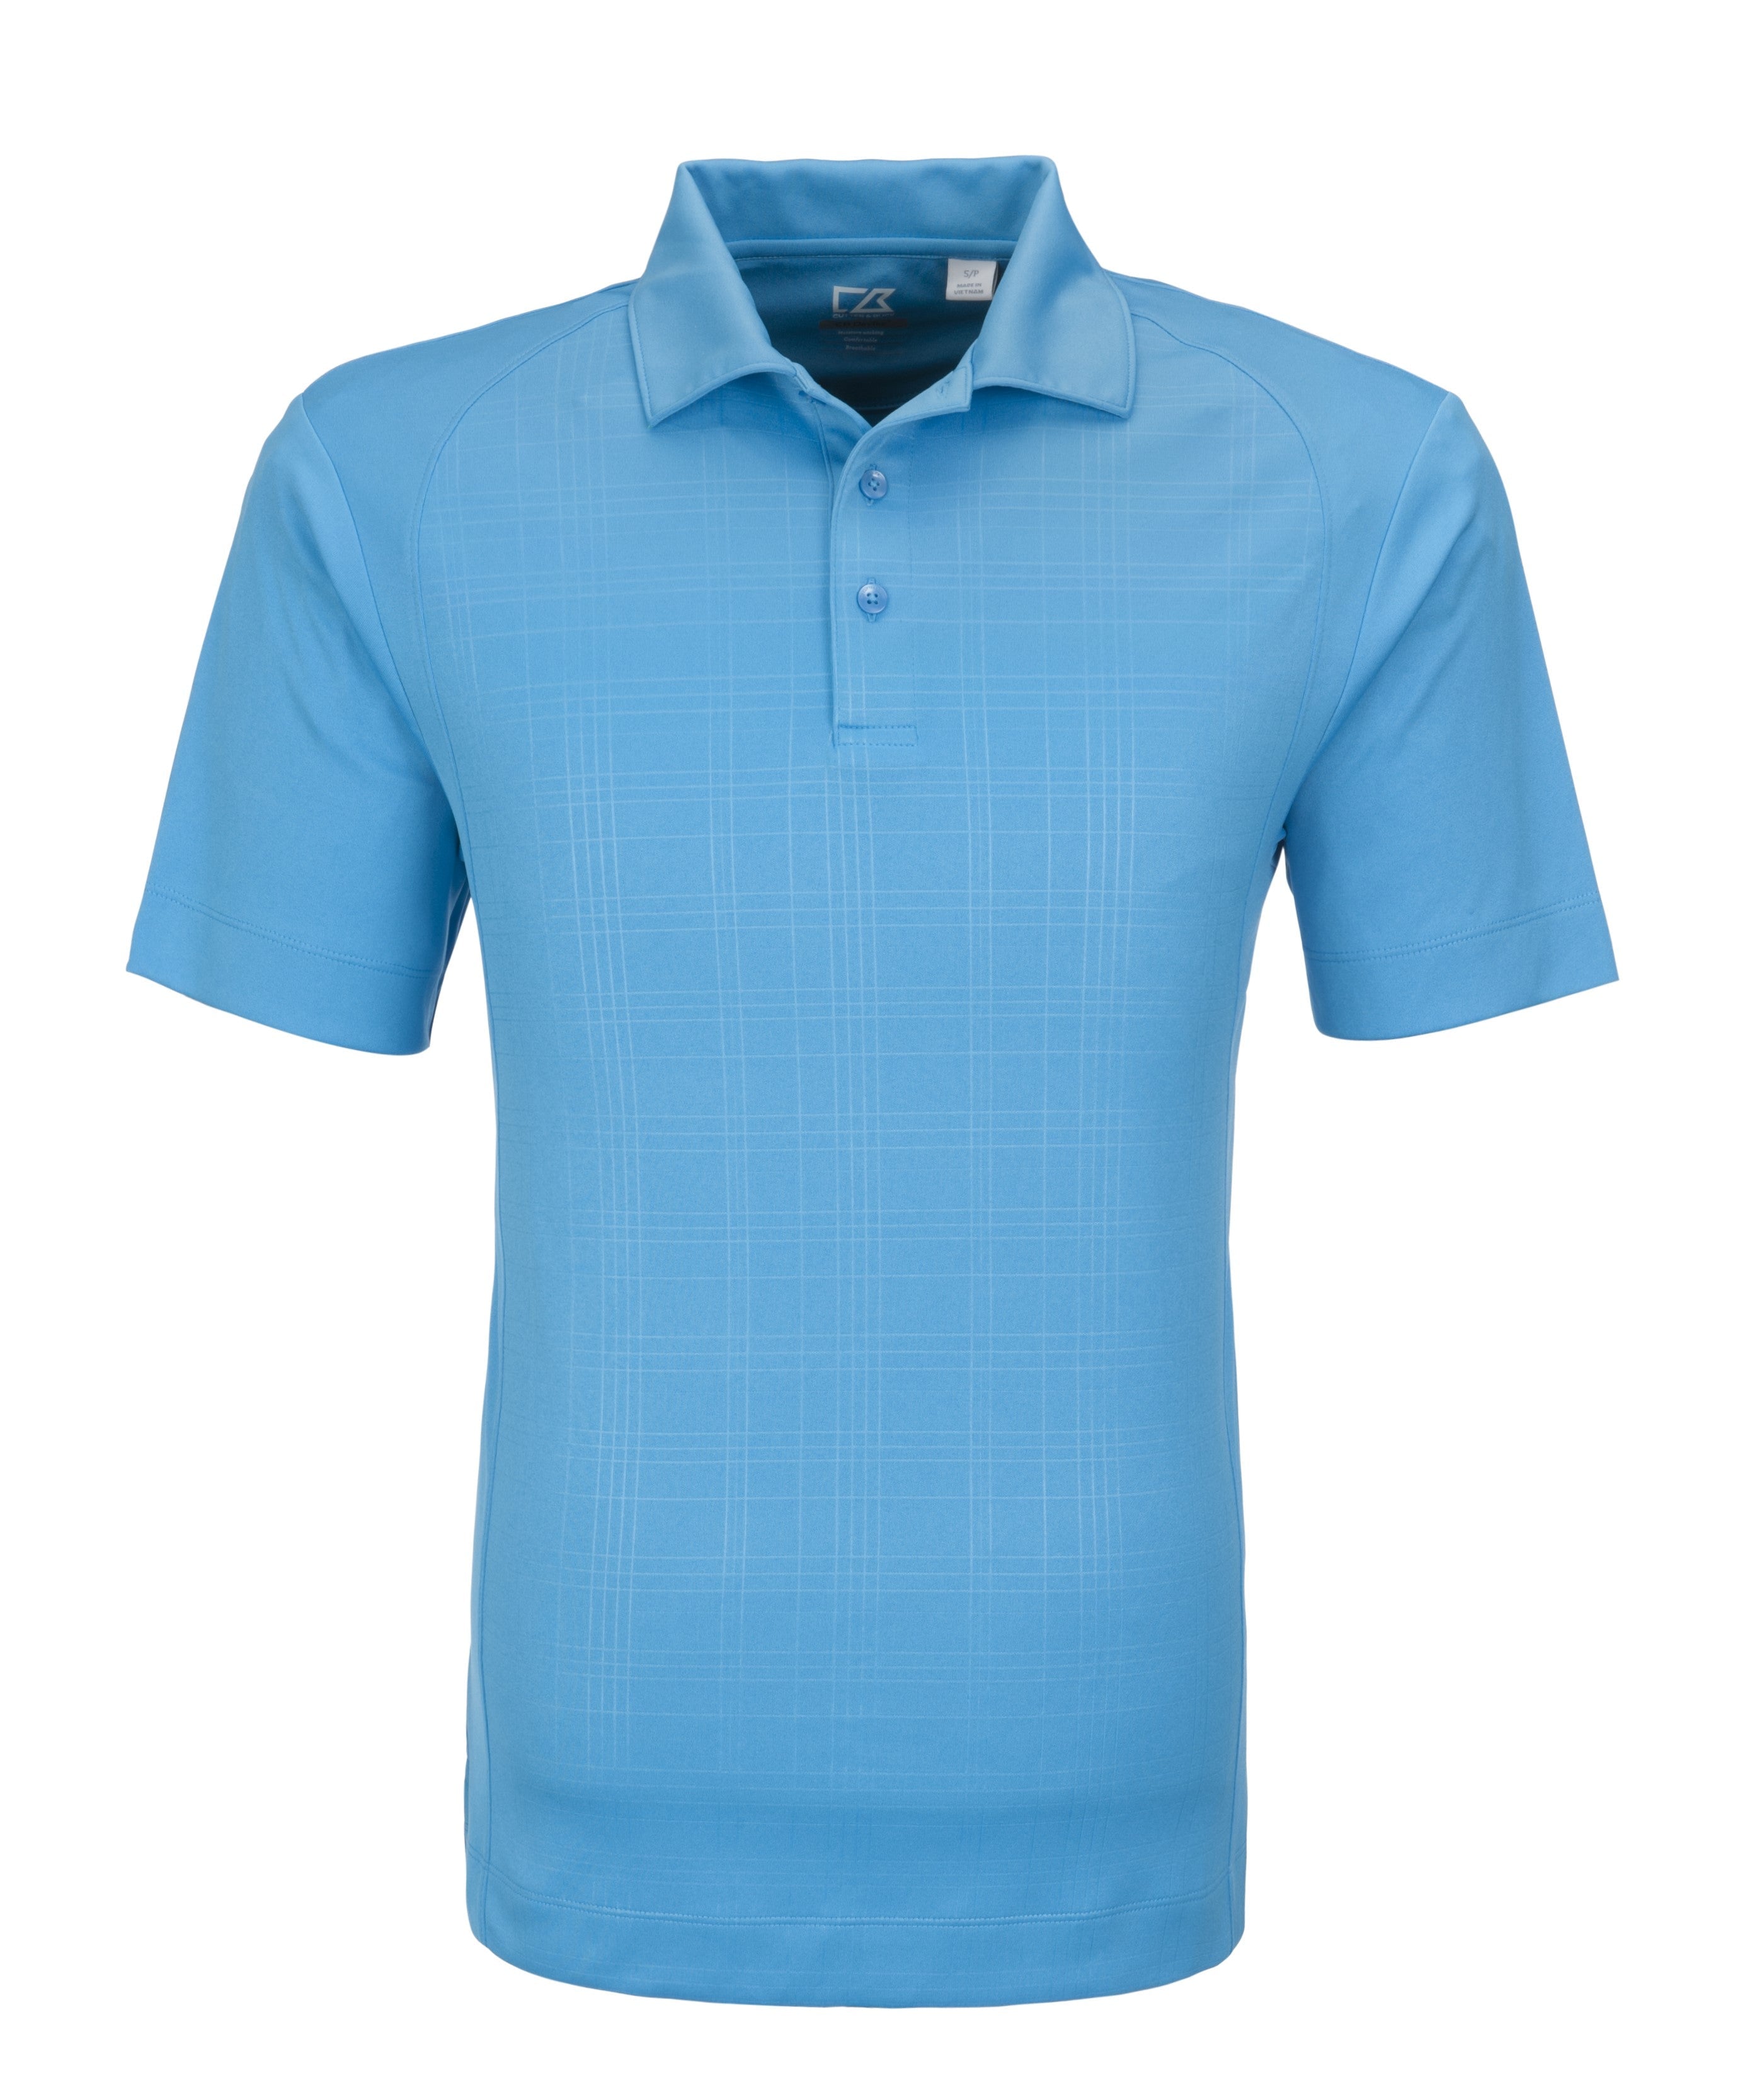 Mens Sullivan Golf Shirt - Light Blue Only-2XL-Light Blue-LB